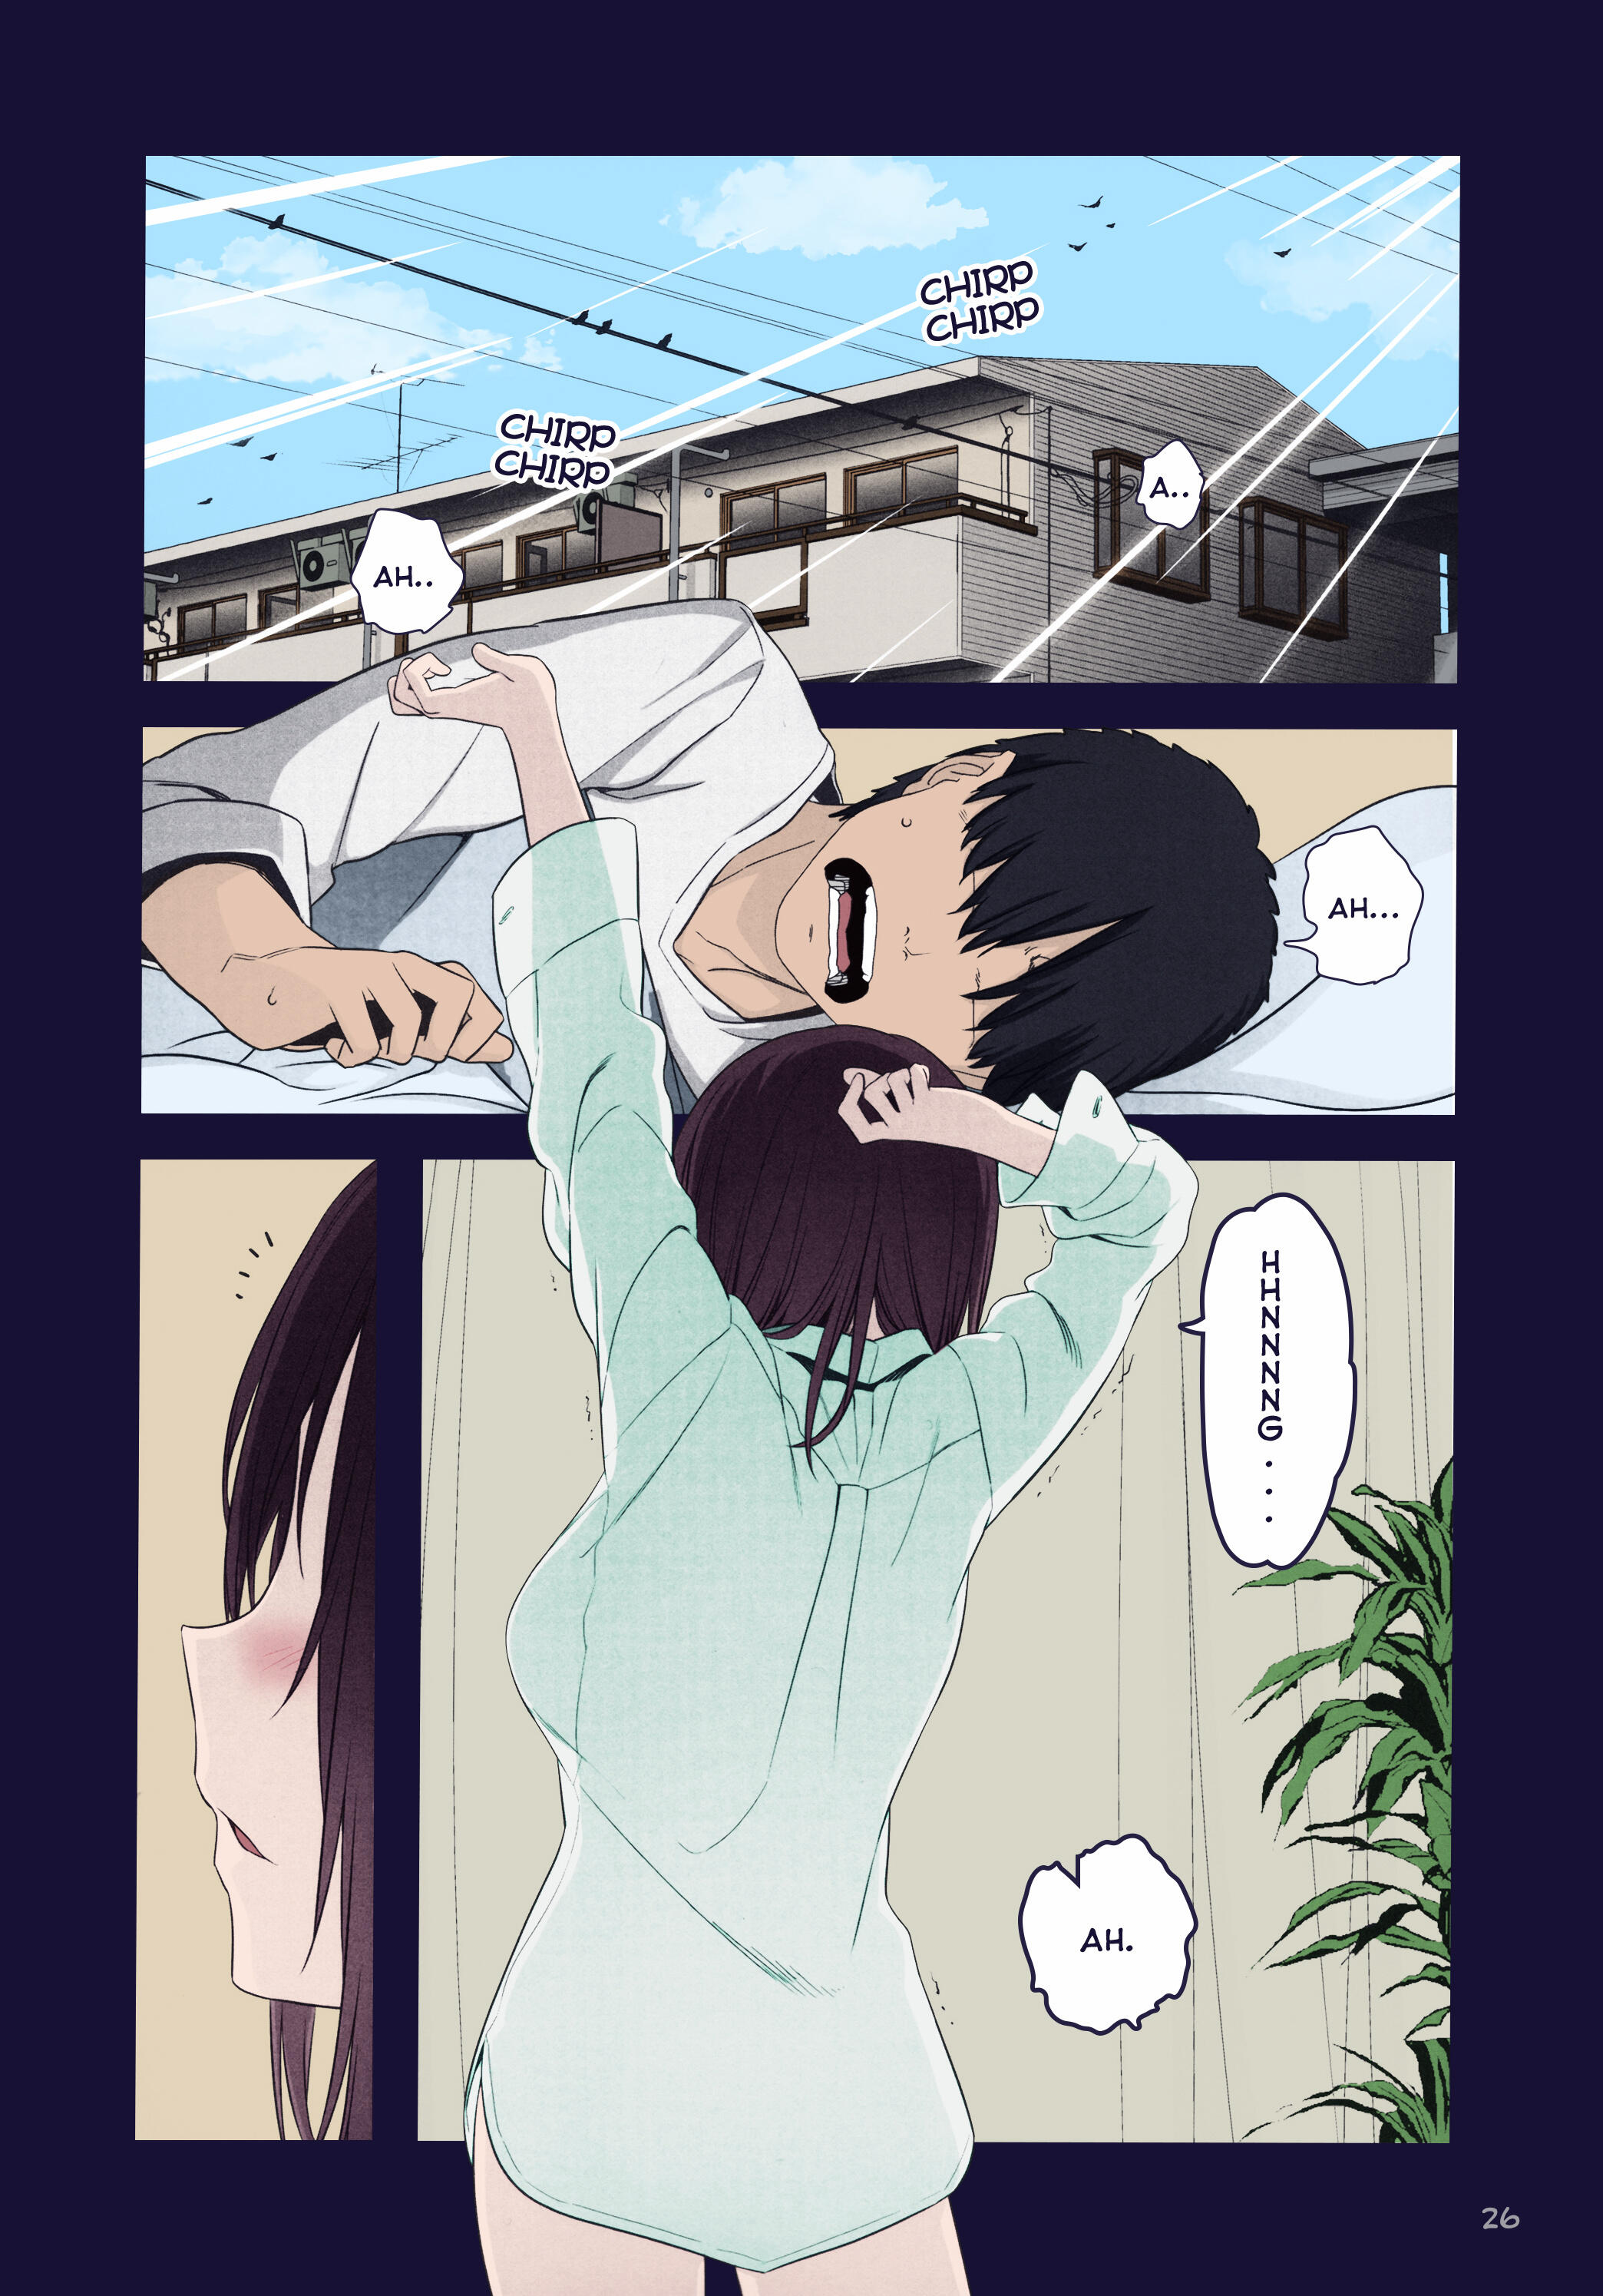 Read Getsuyoubi No Tawawa (Twitter Webcomic) (Fan Colored) Vol.3 Chapter 9:  Part Iii: Ai-Chan Manga on Mangakakalot